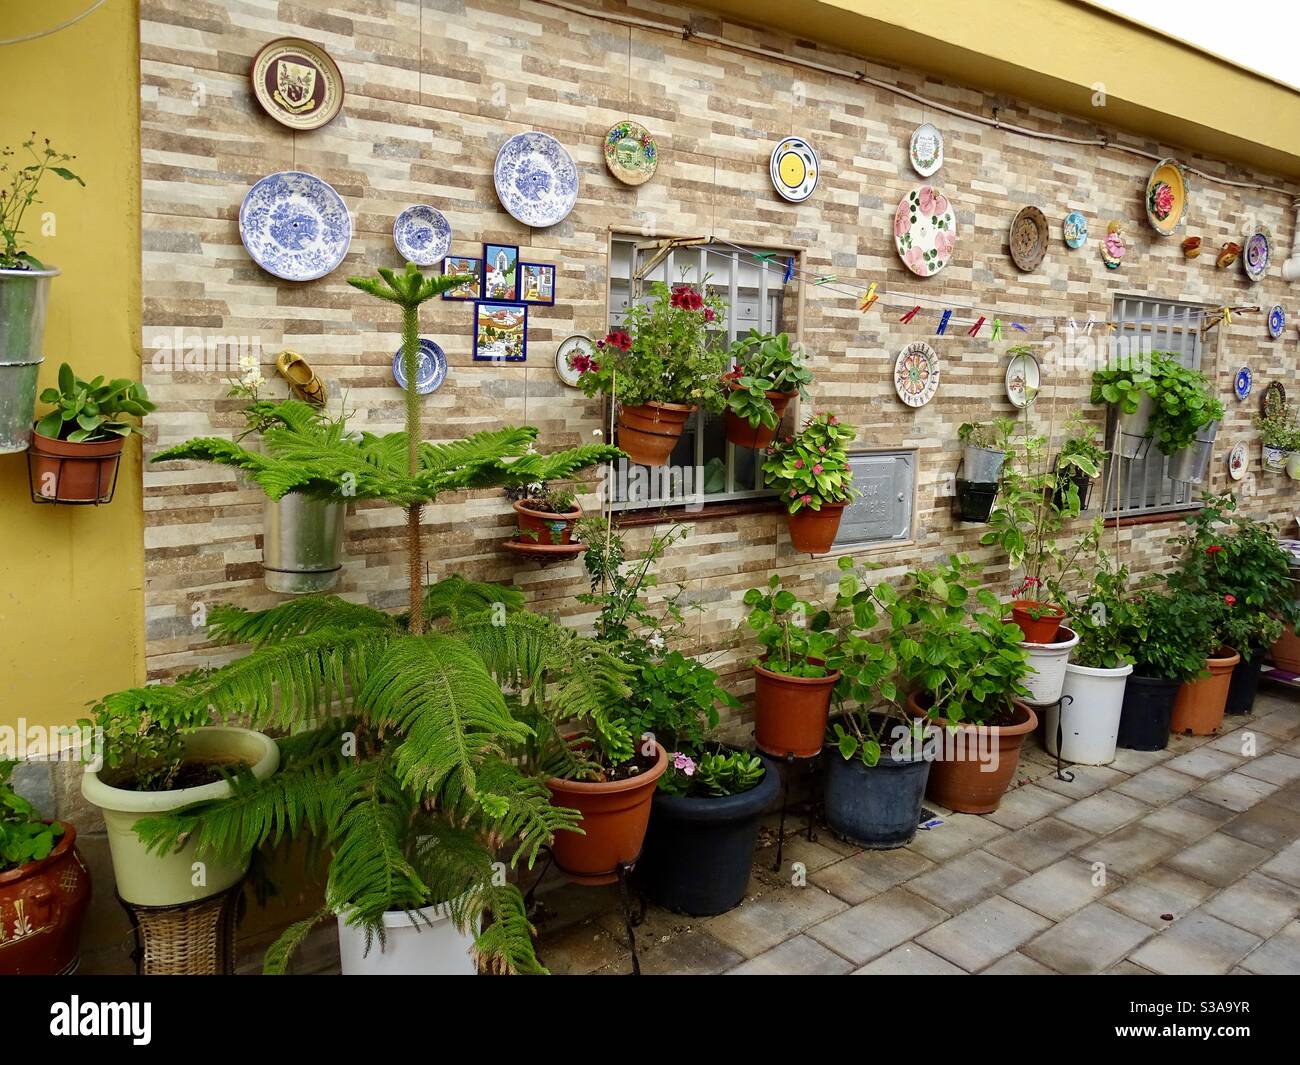 Piatti decorativi e vasi di fiori su un muro nel sud Spagna Foto Stock